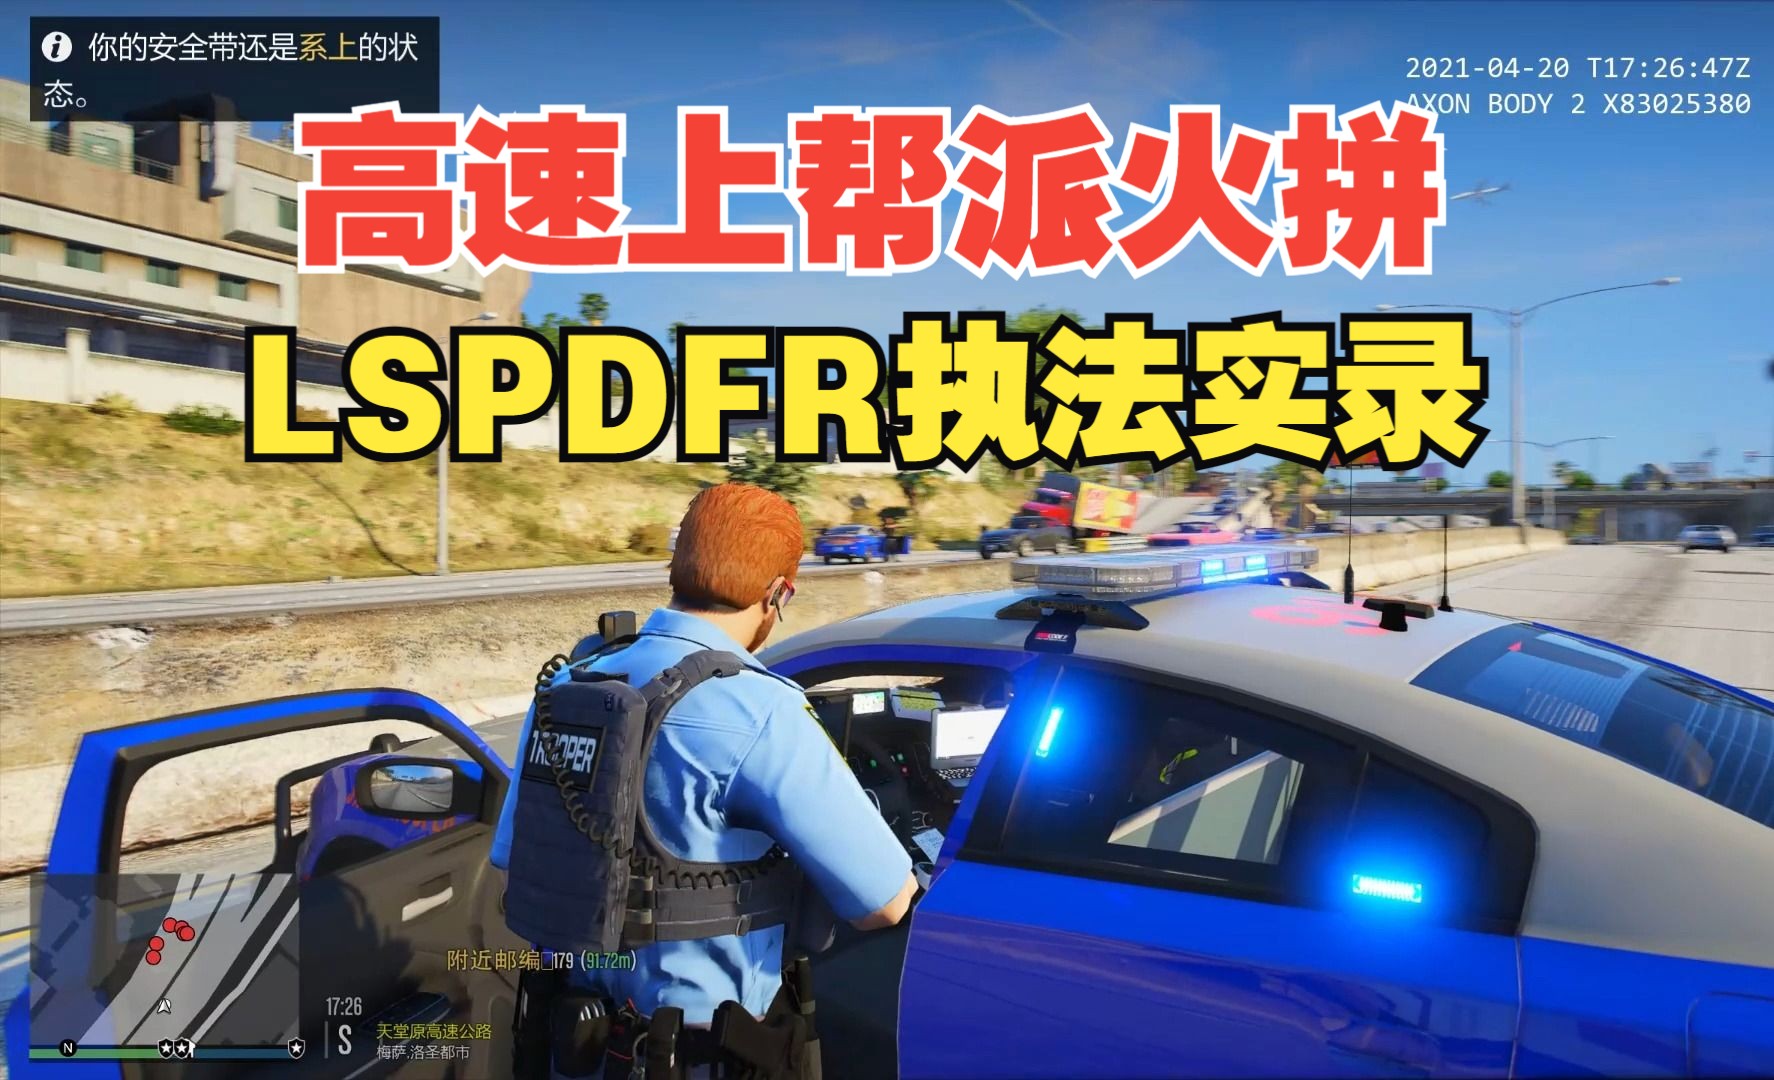 【LSPDFR】：高速上帮派火拼 警员发生交火！执法实录